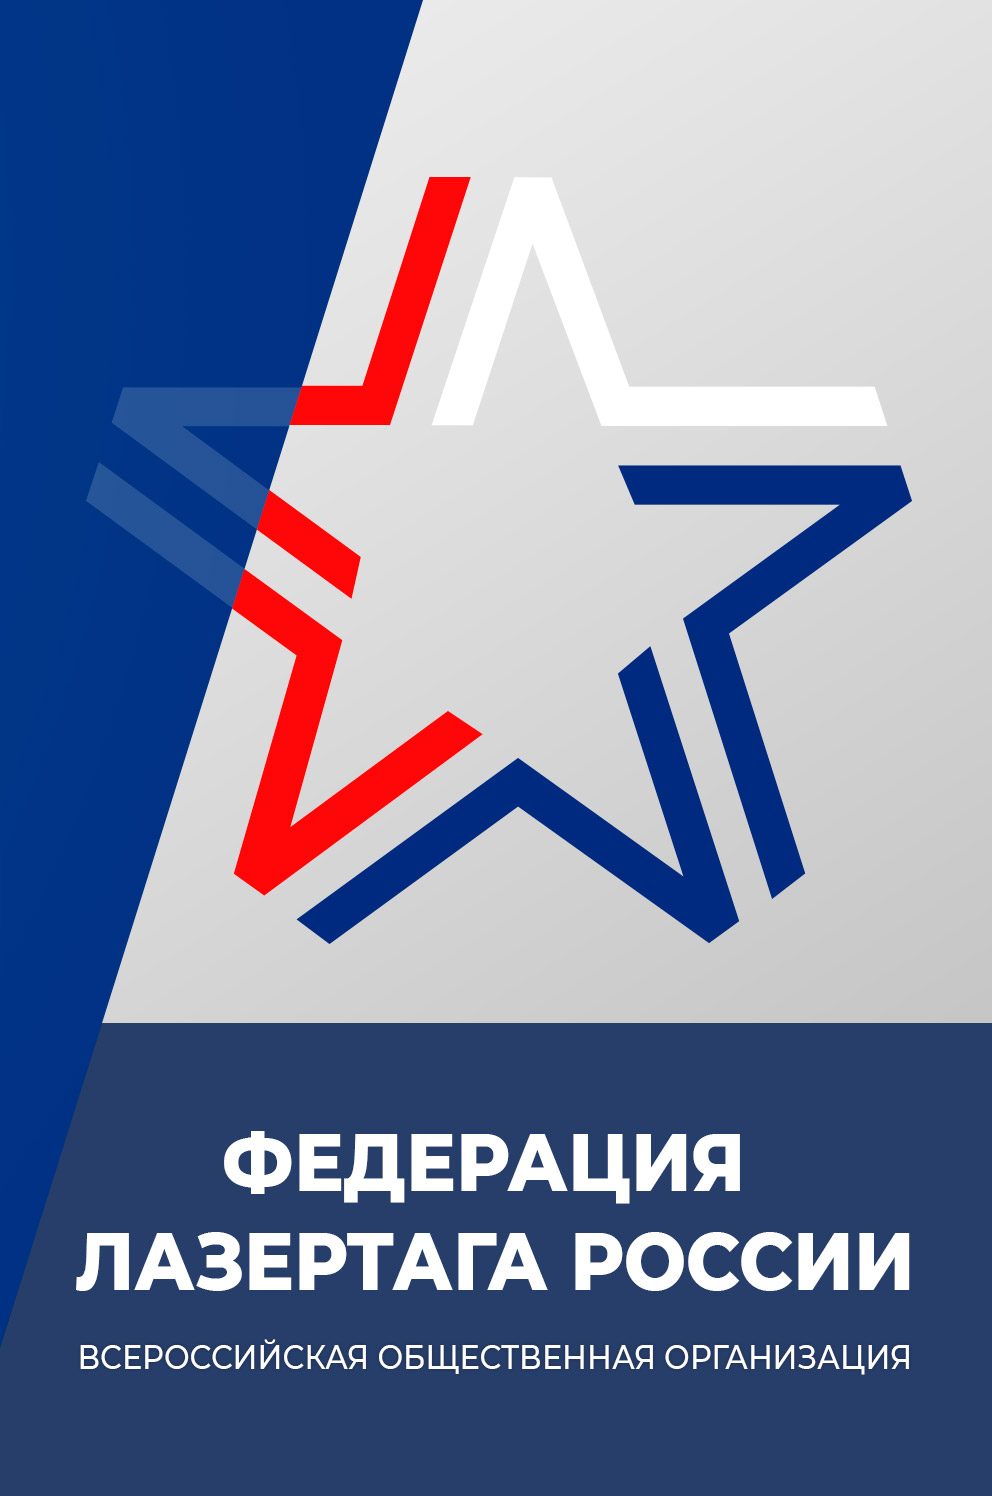 Звезда Федерации Лазертага России